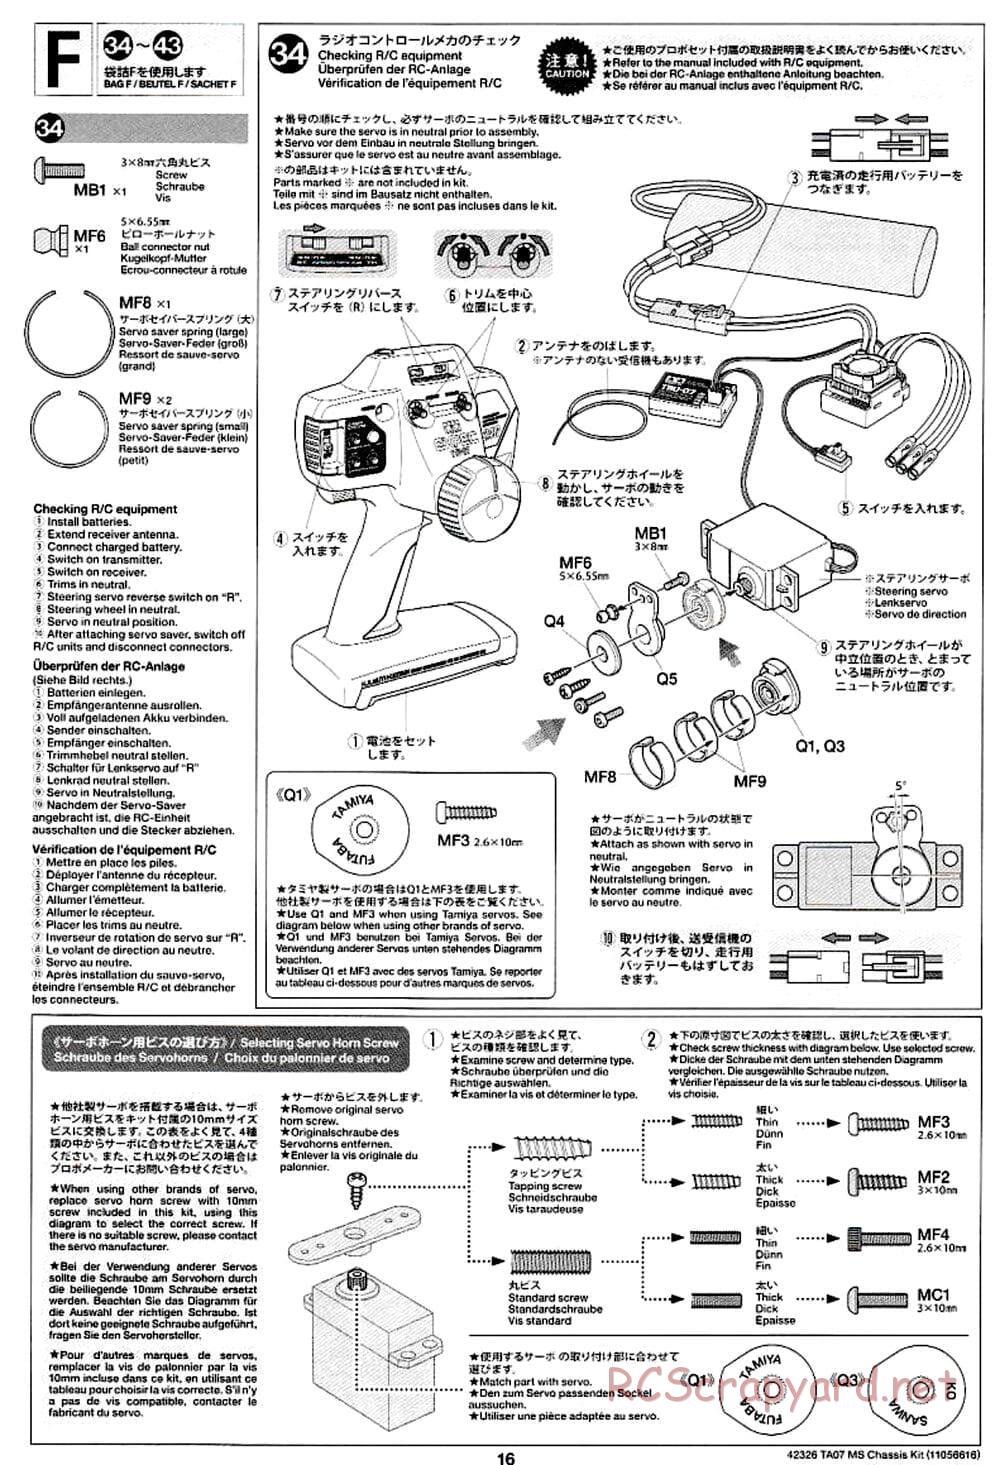 Tamiya - TA07 MS Chassis - Manual - Page 16